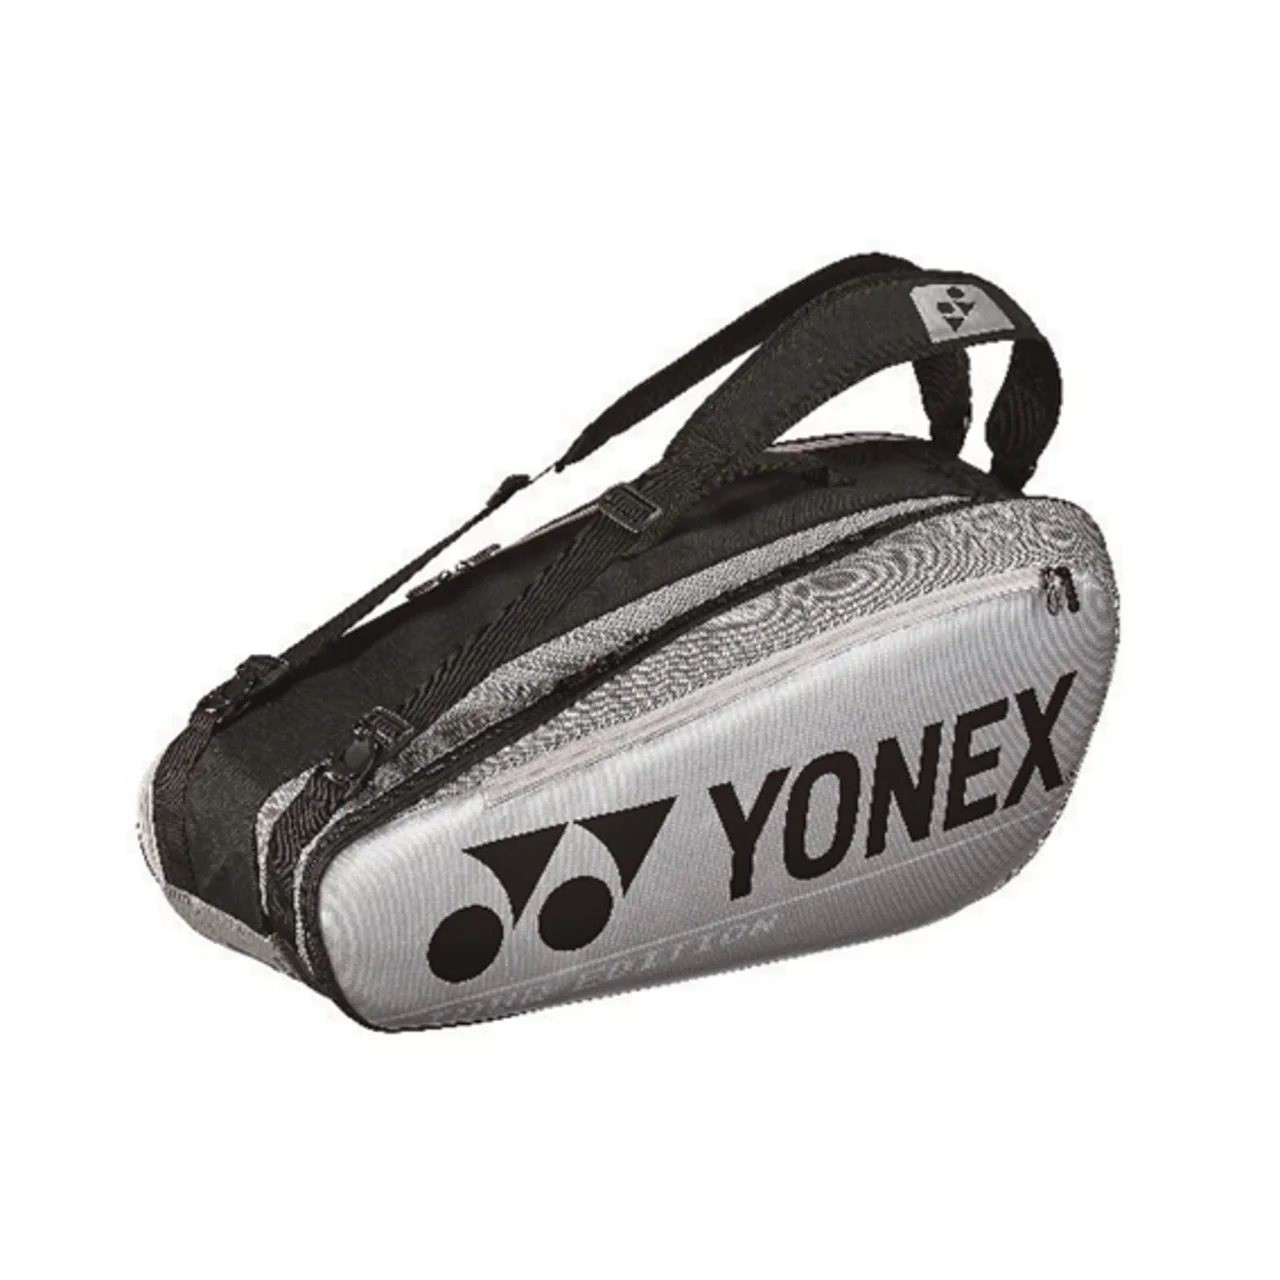 Yonex Pro Bag x6 Silver 2020